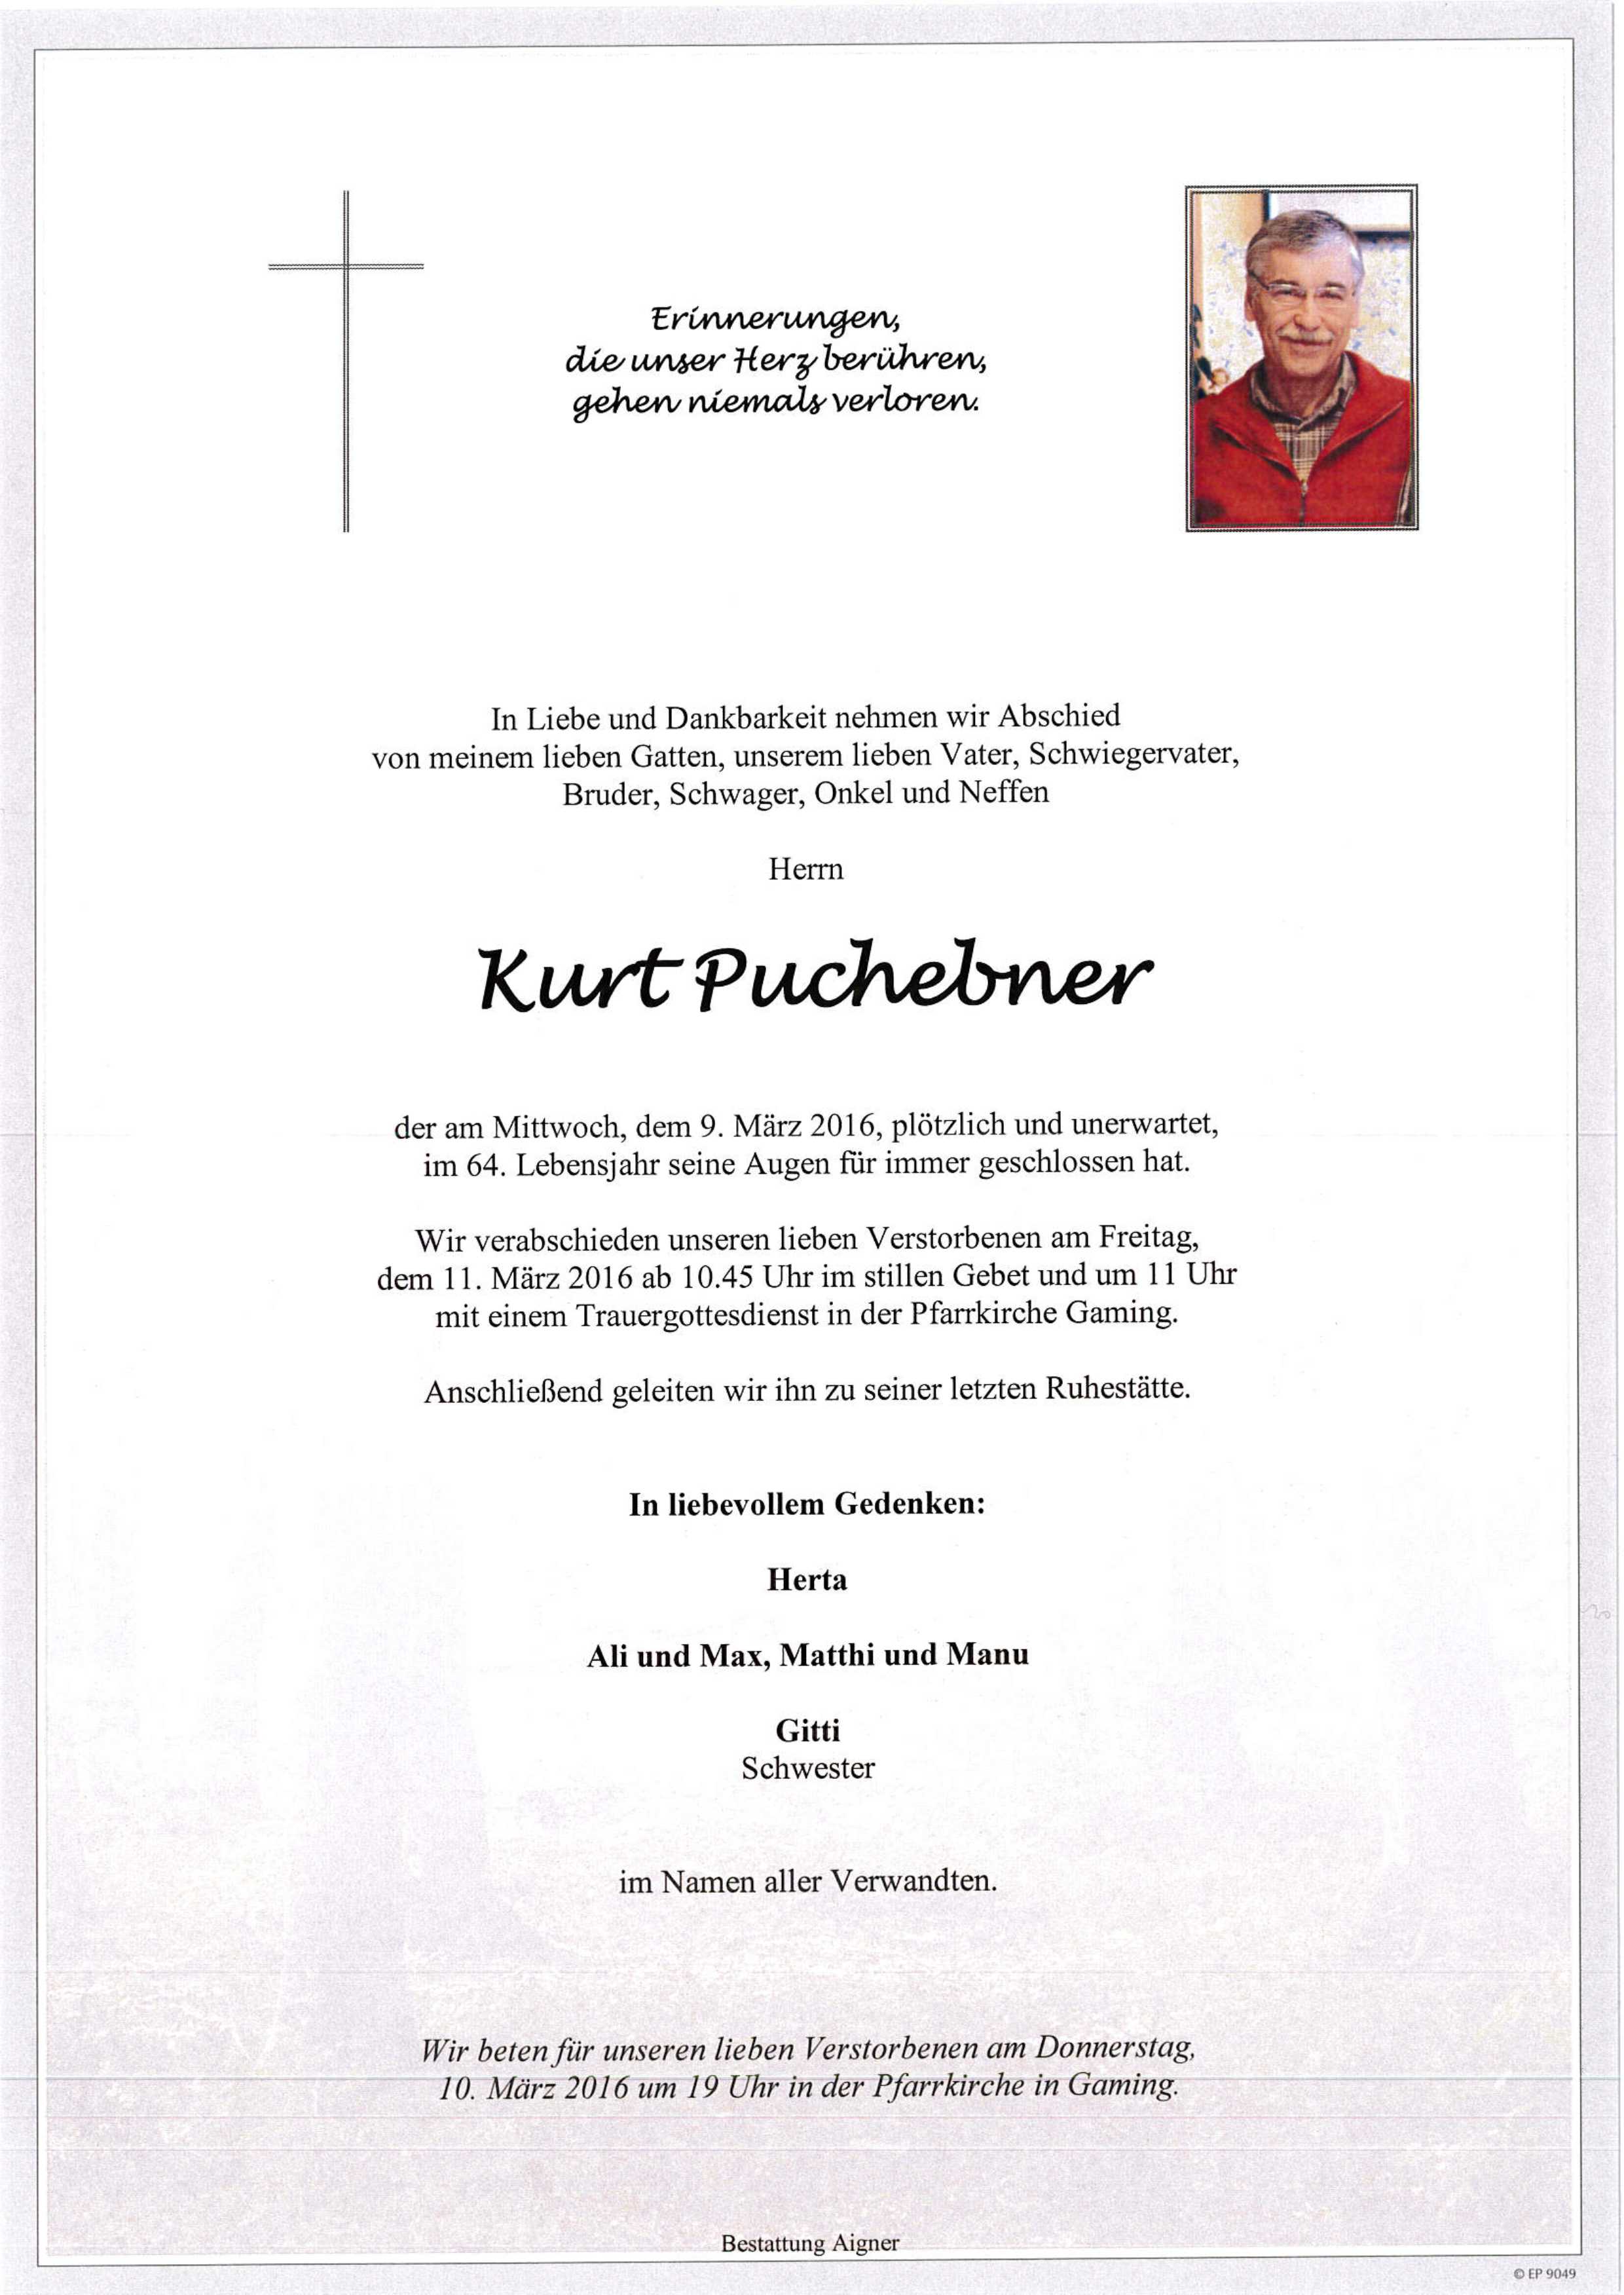 Kurt Puchebner